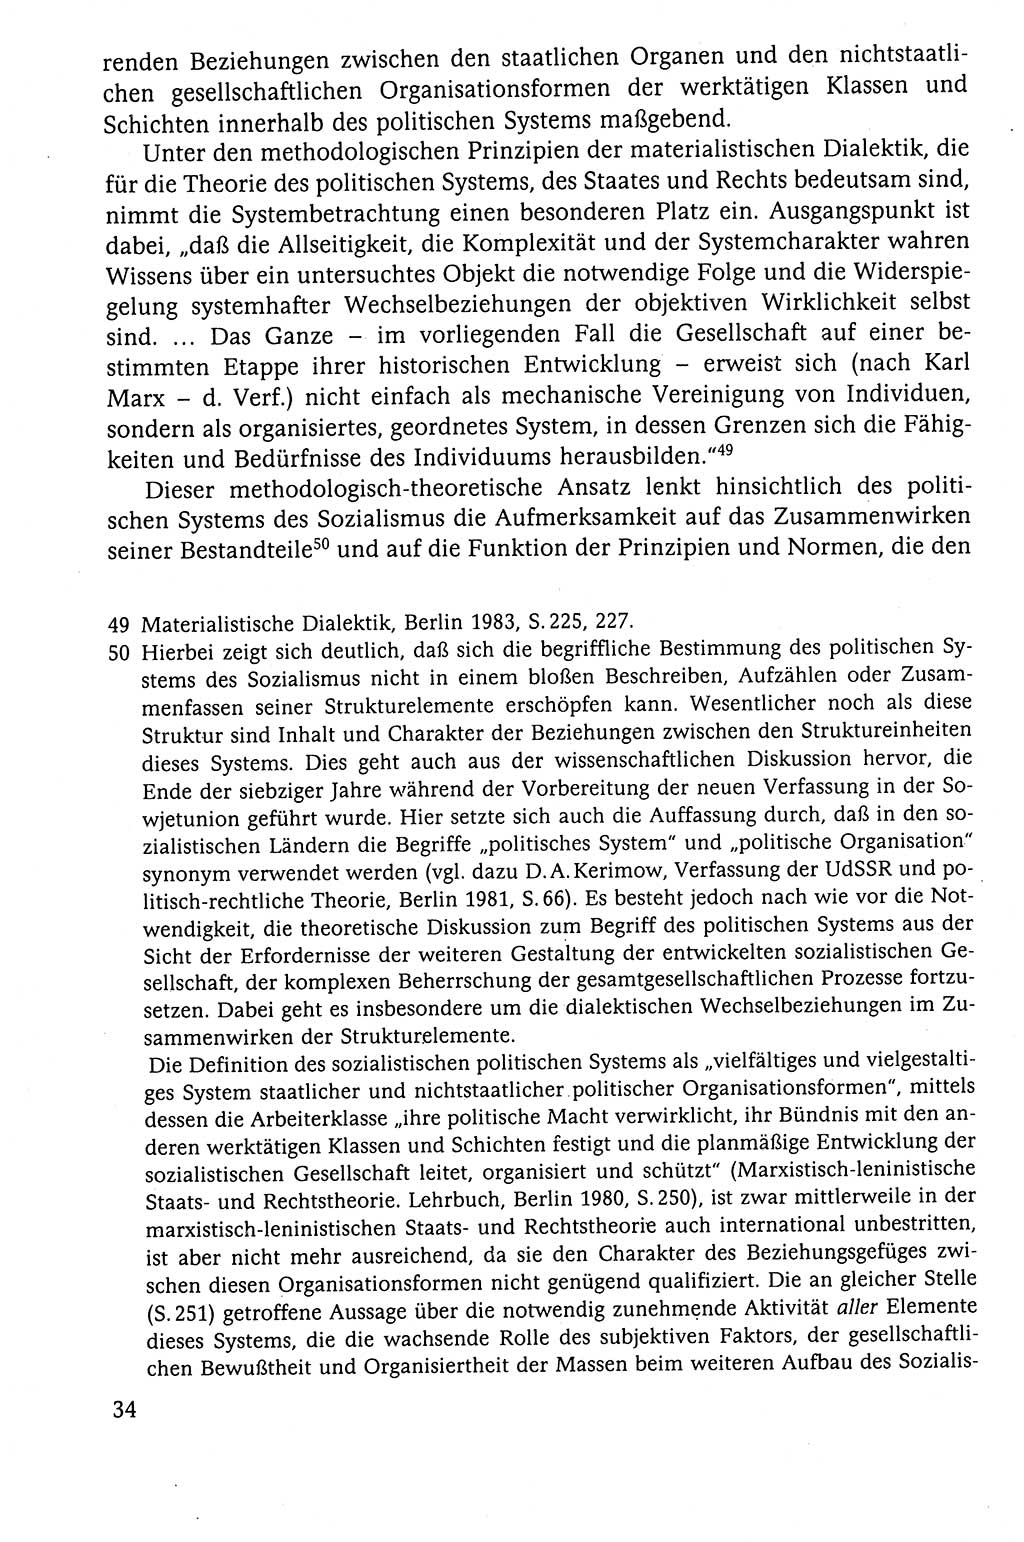 Der Staat im politischen System der DDR (Deutsche Demokratische Republik) 1986, Seite 34 (St. pol. Sys. DDR 1986, S. 34)